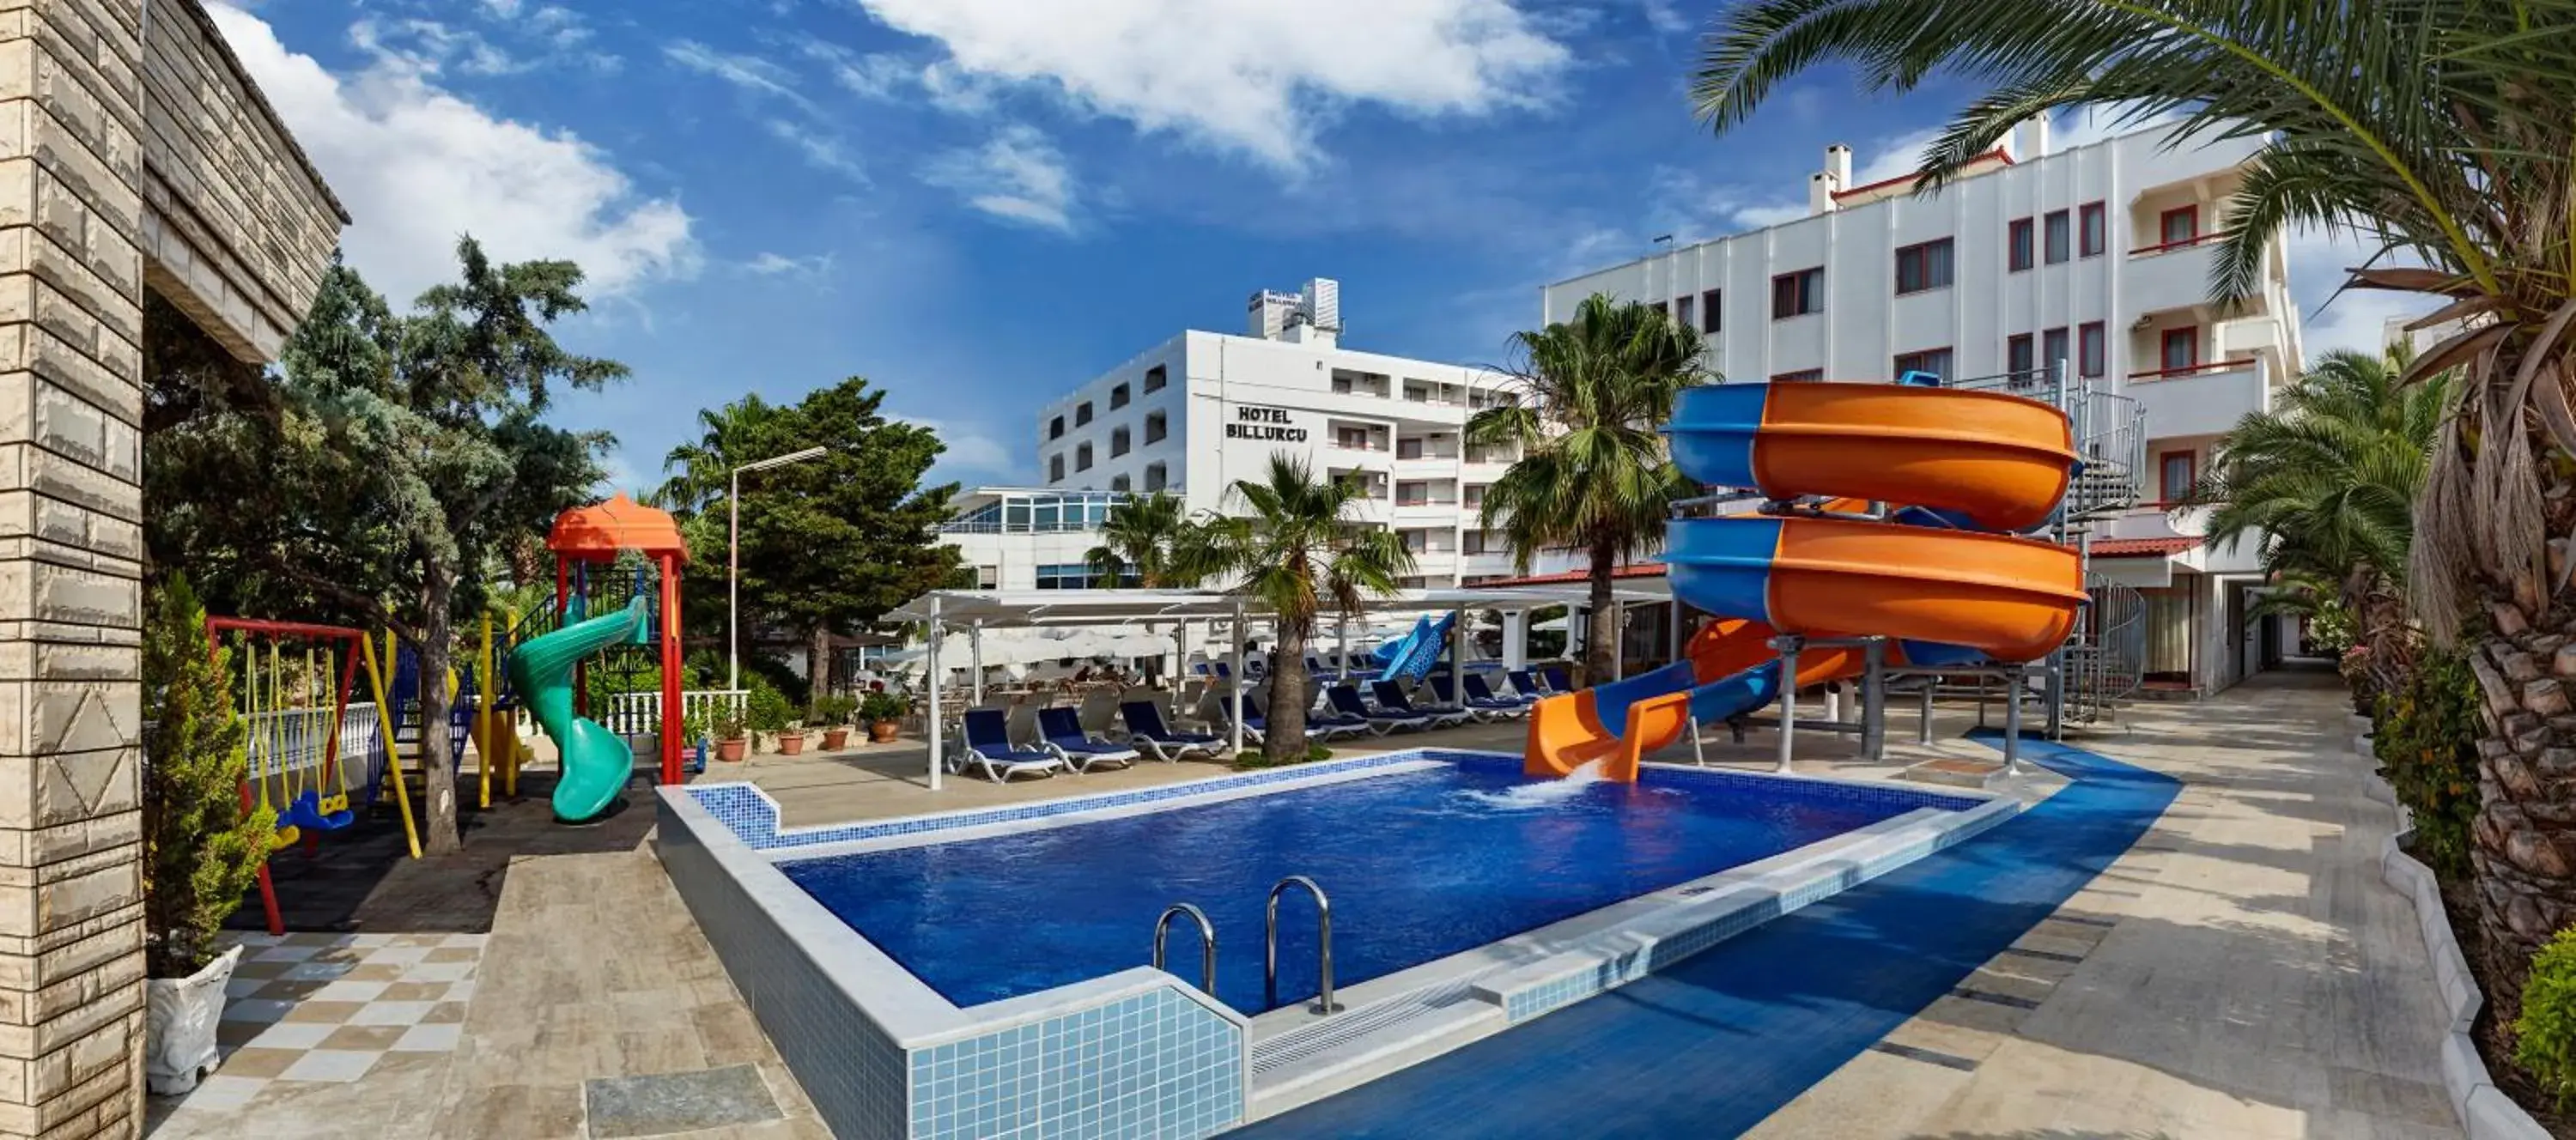 Property building, Swimming Pool in Hotel Billurcu